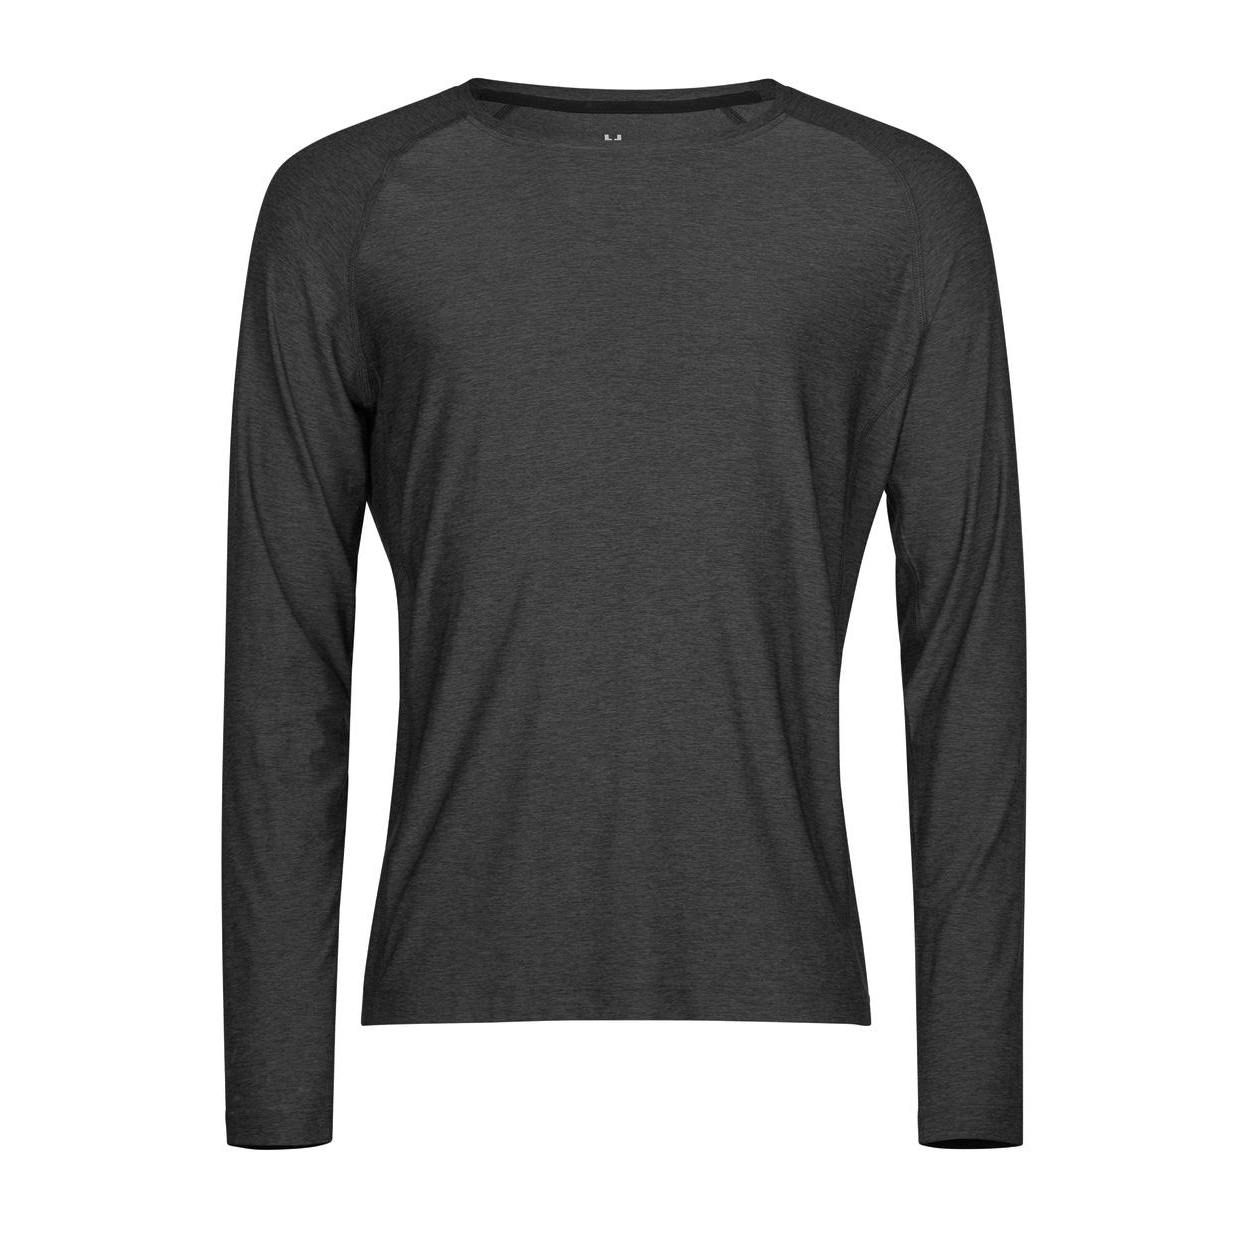 Triko pánské Stedman Tee Jays CoolDry tričko s dlouhými rukávy - tmavě šedé, L